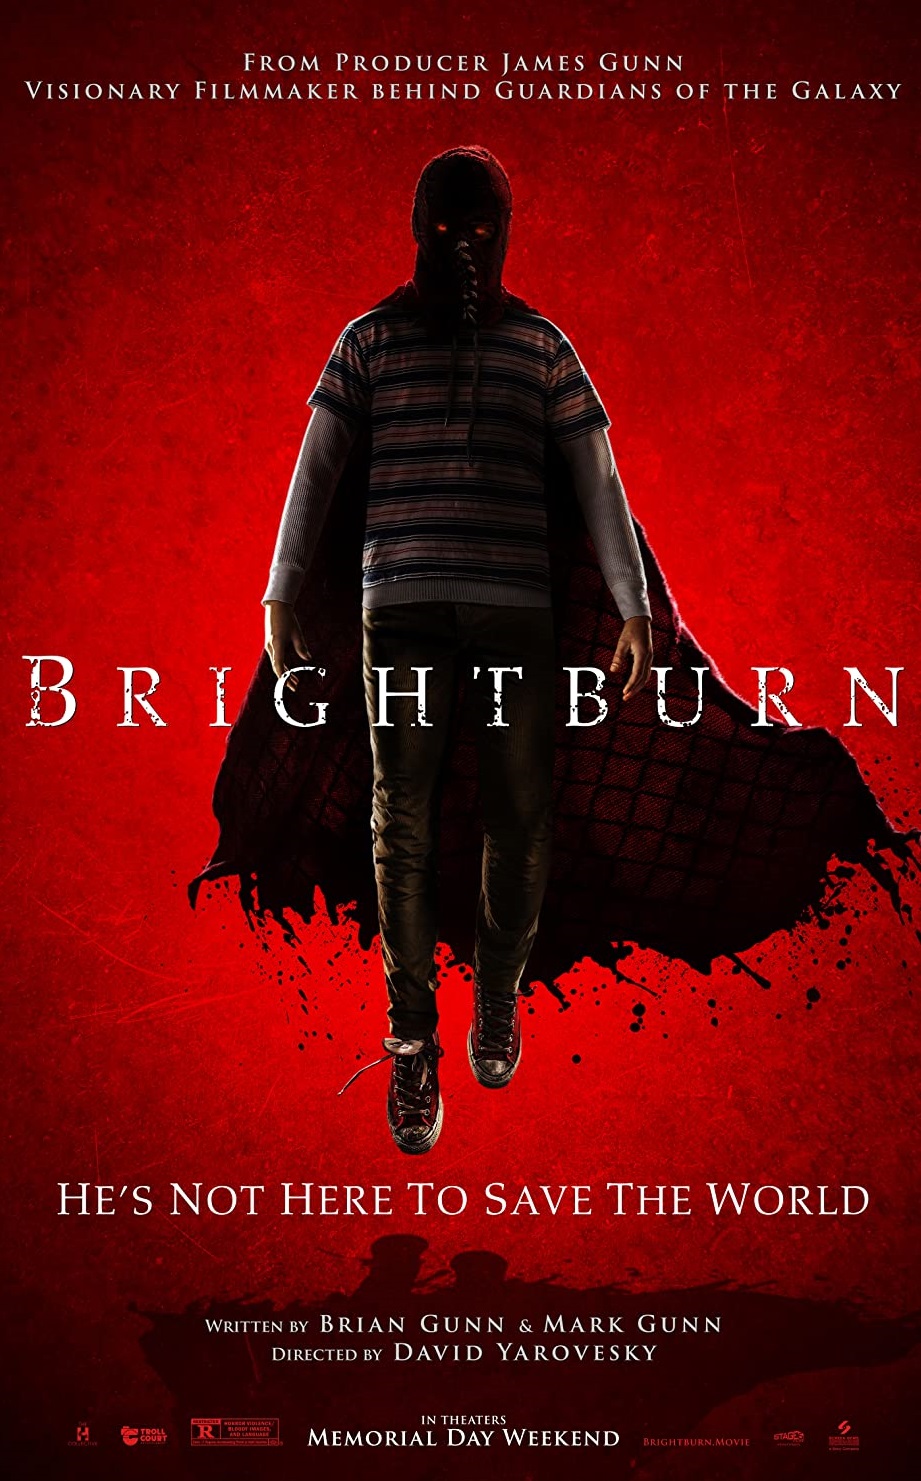 Brightburn (2019) 2019 Tamil Dubbed Horror Movie Online